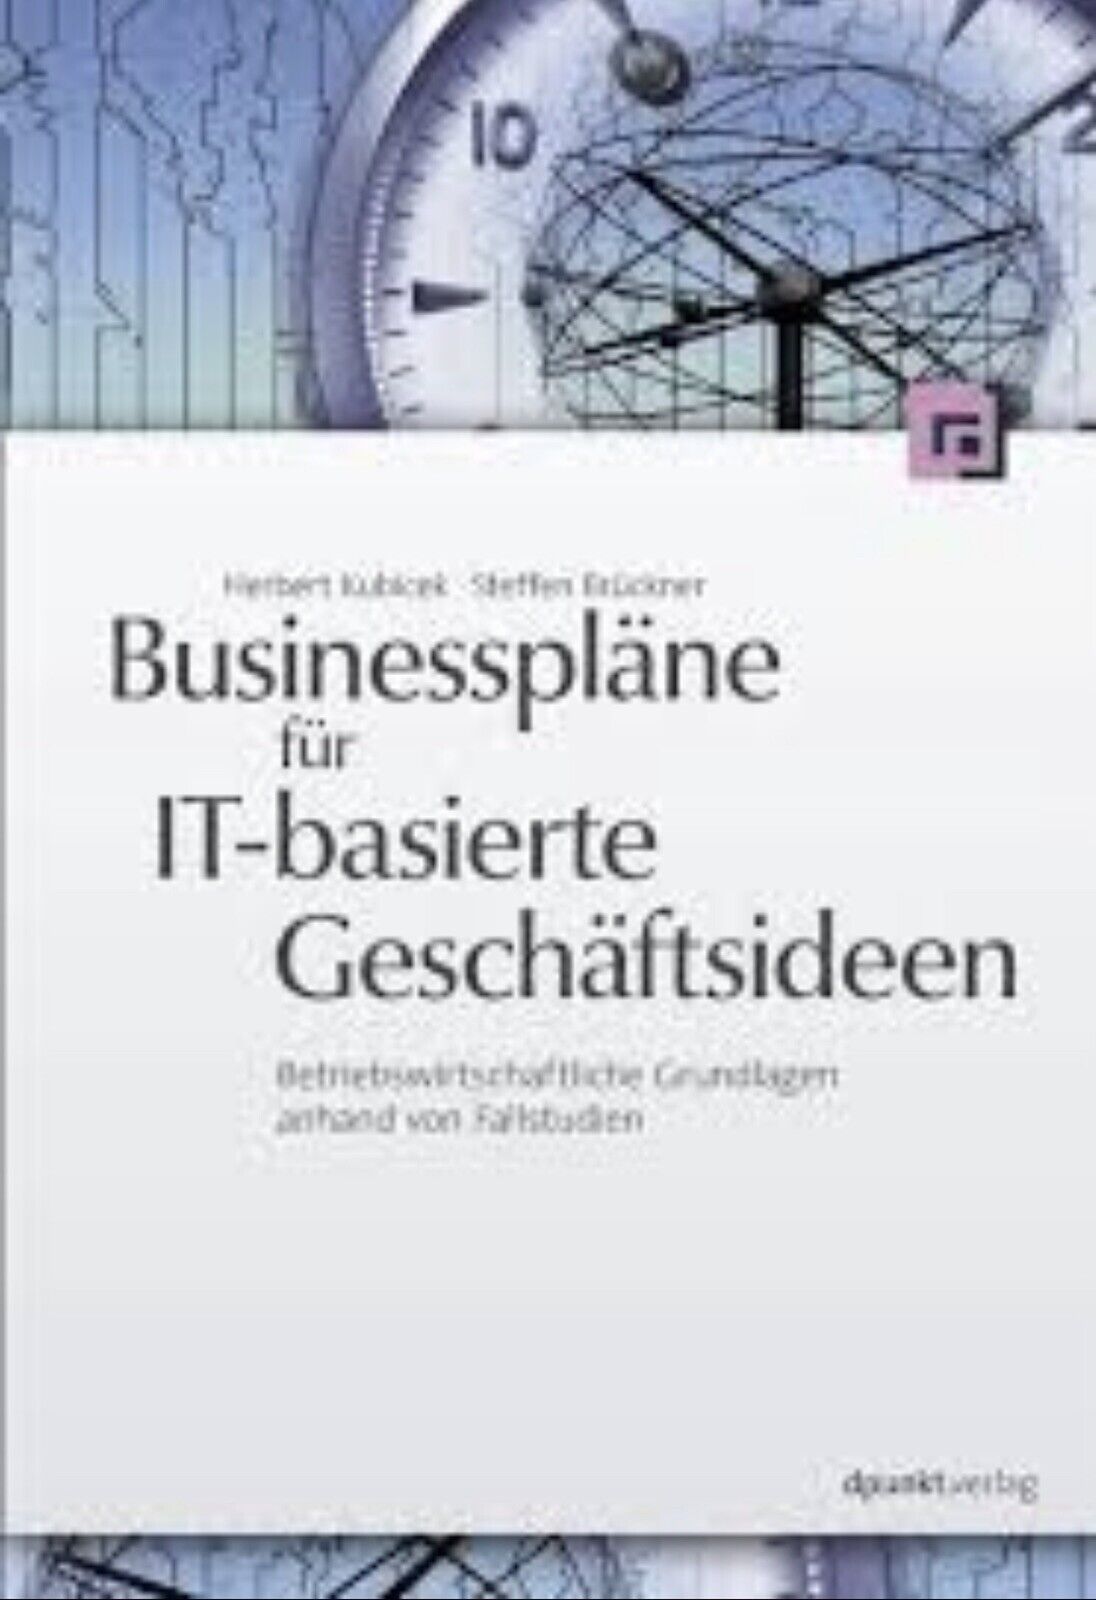 Businesspläne für IT-basierte Geschäftsideen von Herbert Kubicek - Herbert Kubicek, Steffen Brückner